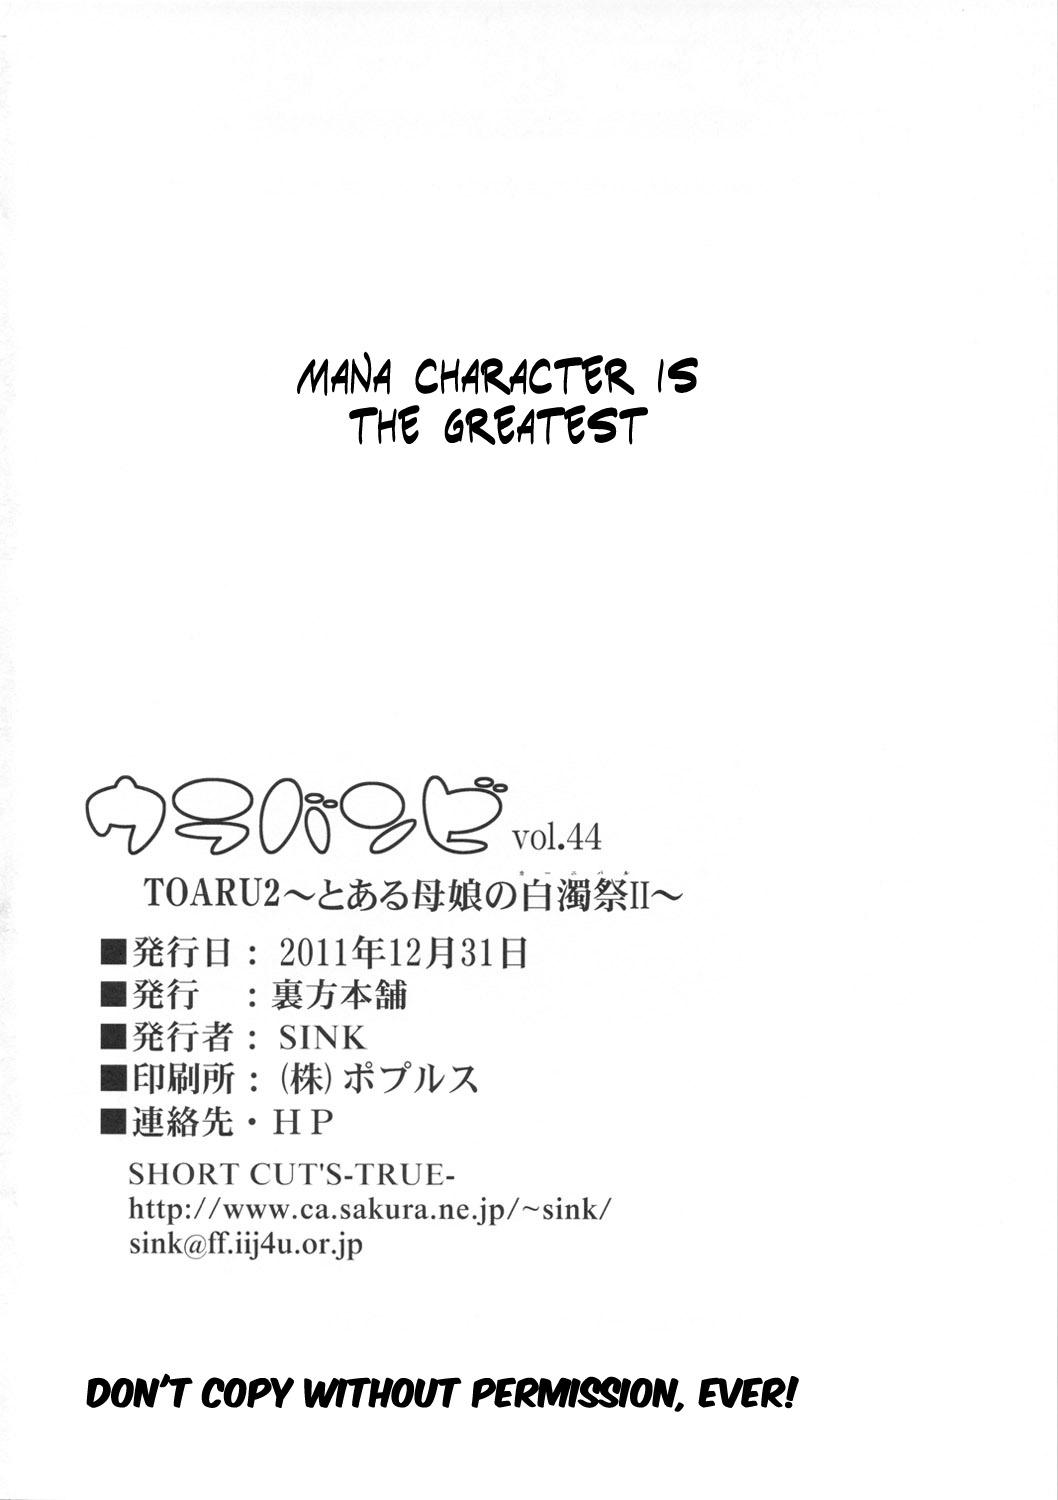 Mamada Urabambi Vol. 44 TOARU 2 - Toaru kagaku no railgun Toaru majutsu no index Monster Cock - Page 25